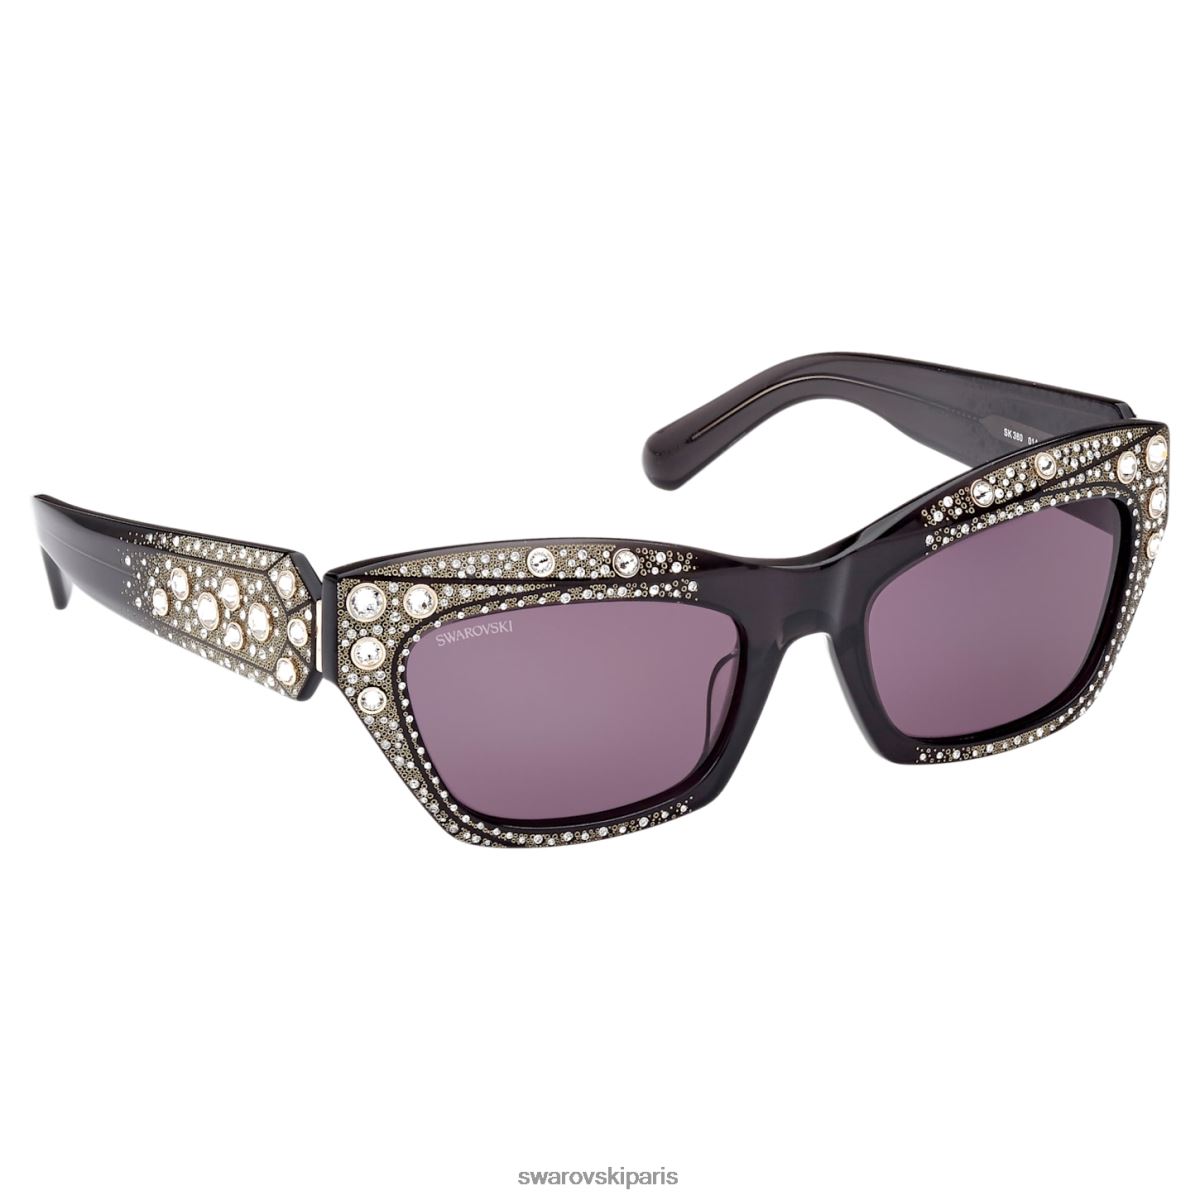 accessoires Swarovski des lunettes de soleil forme oeil de chat, sk0380 01a, noir RZD0XJ1438